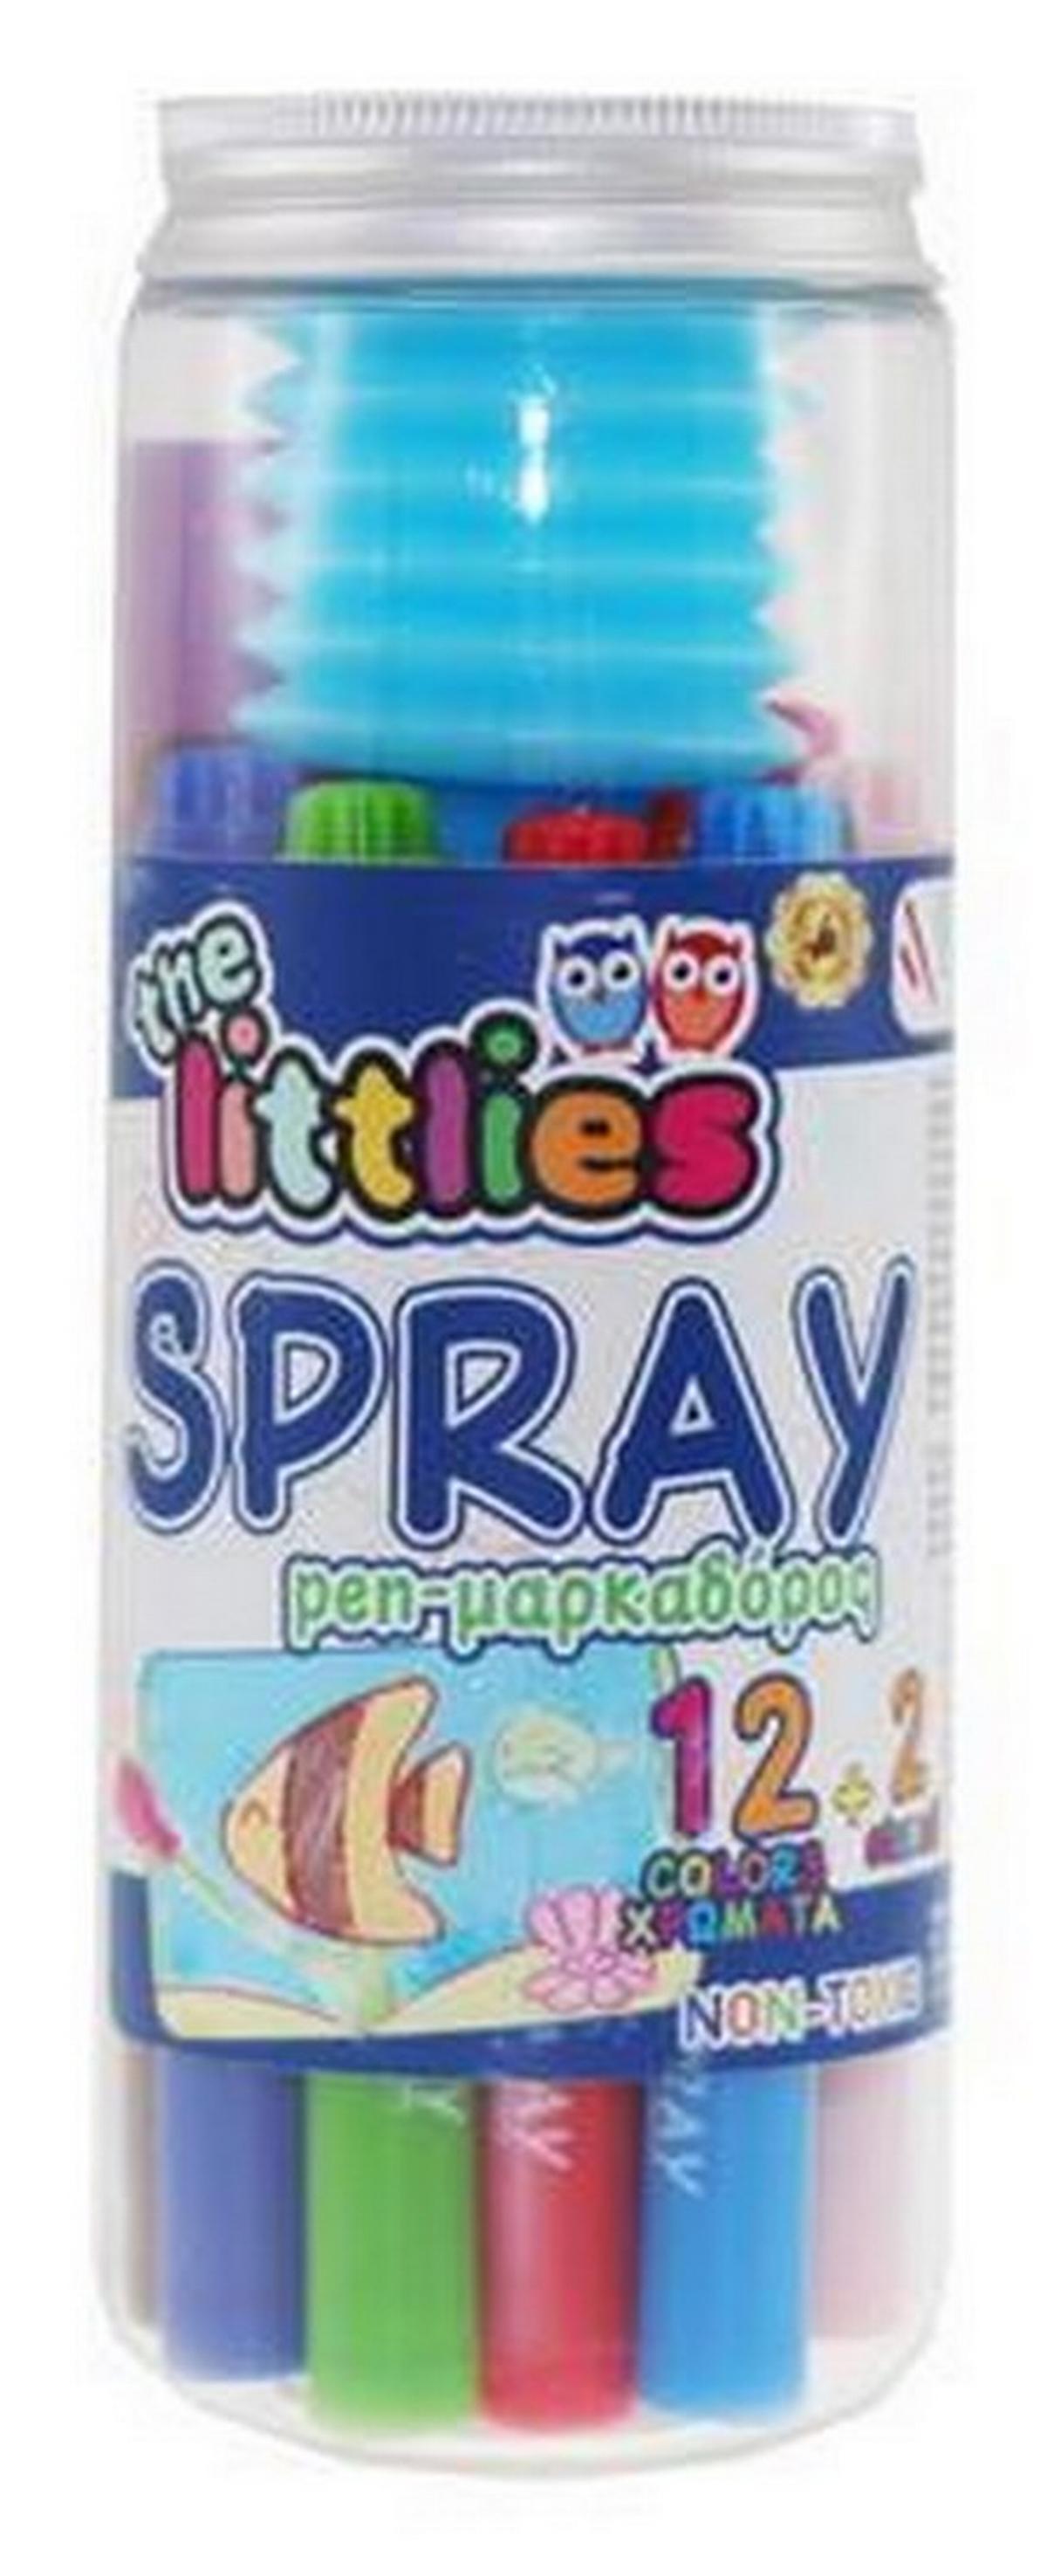 Μαρκαδόροι spray 12 χρώματα